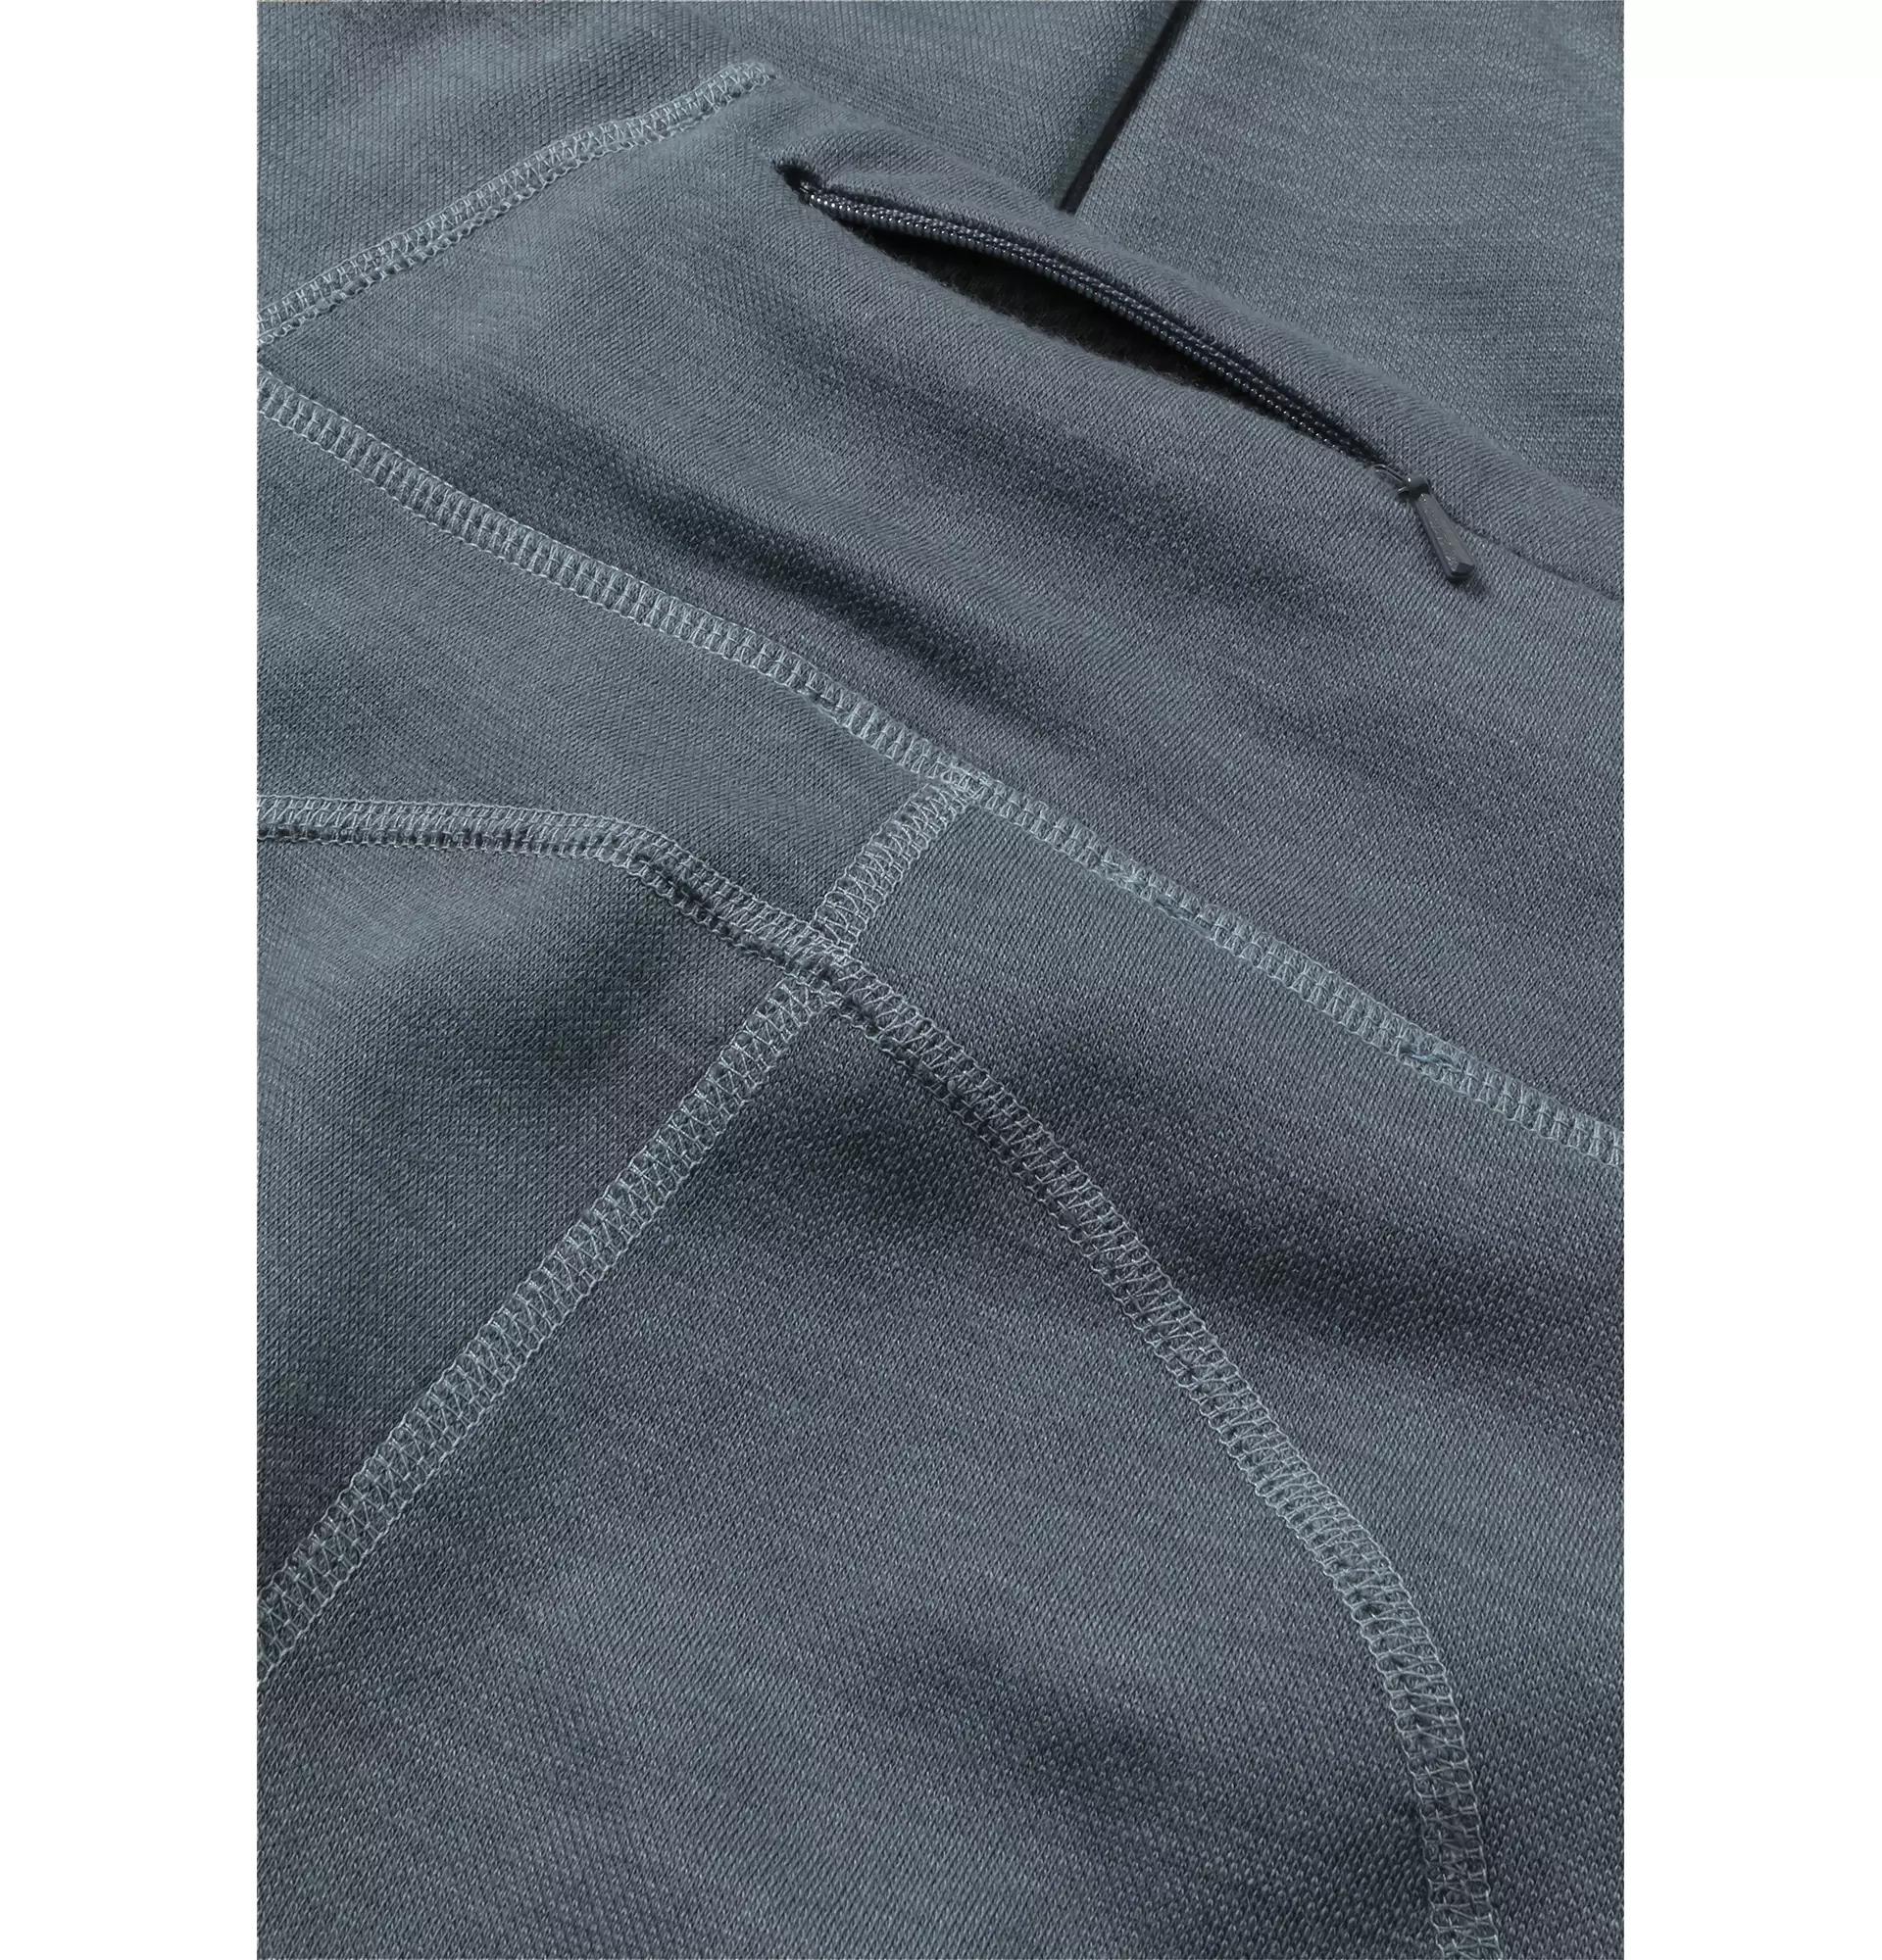 Plain organic leggings: fuseaux tinta unita, 95% cotone biologico, 5%  elastane, da commercio etico